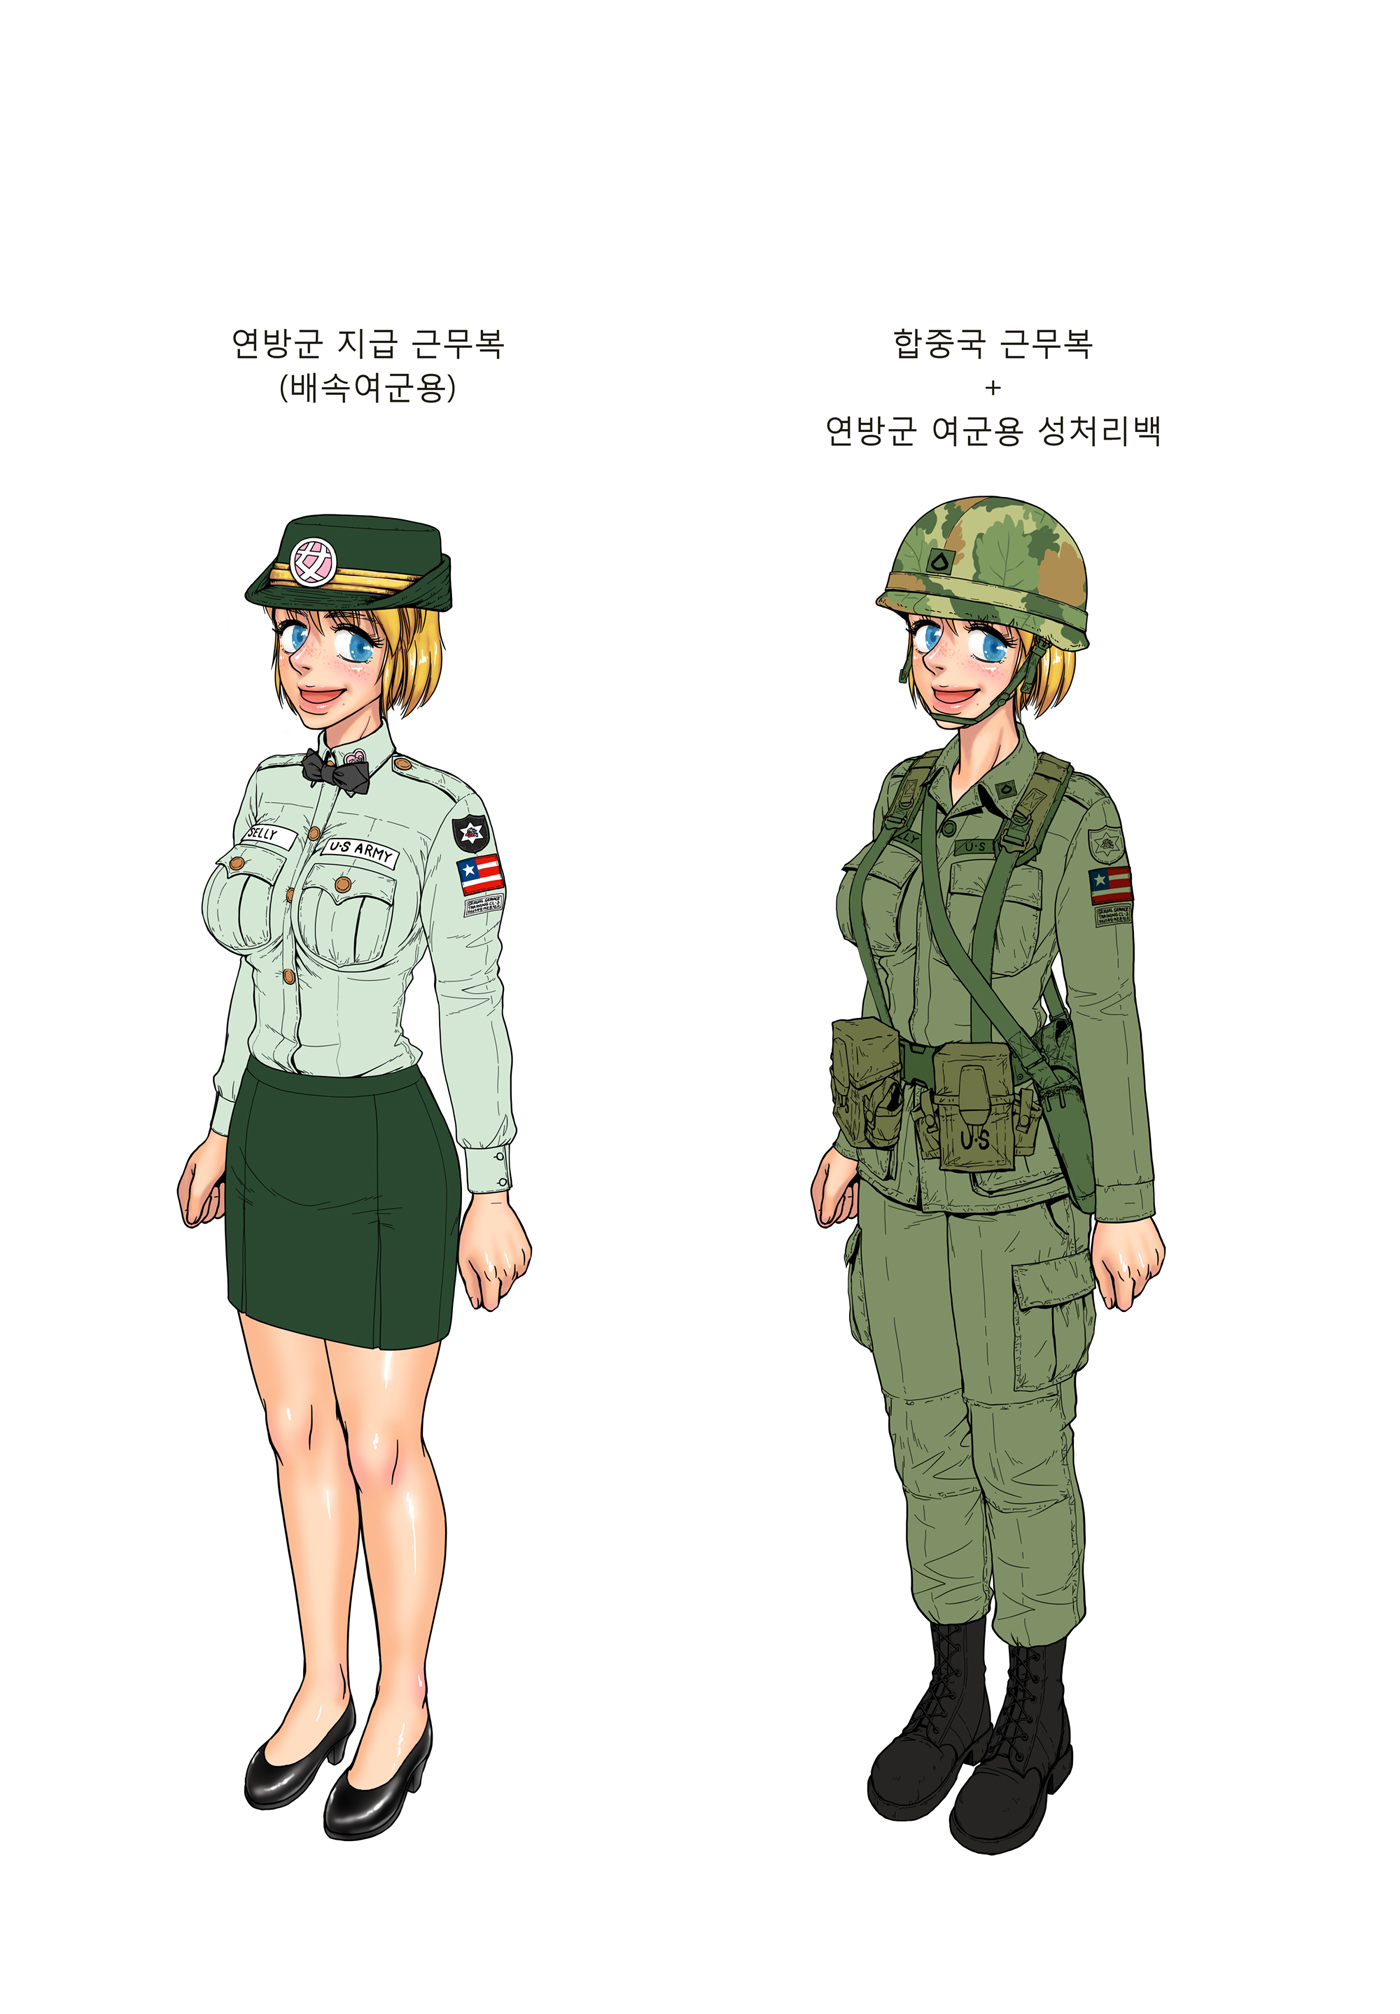 Gogocherry Highres Blonde Hair Blue Eyes Female Soldier Korean Text Soldier Uniform